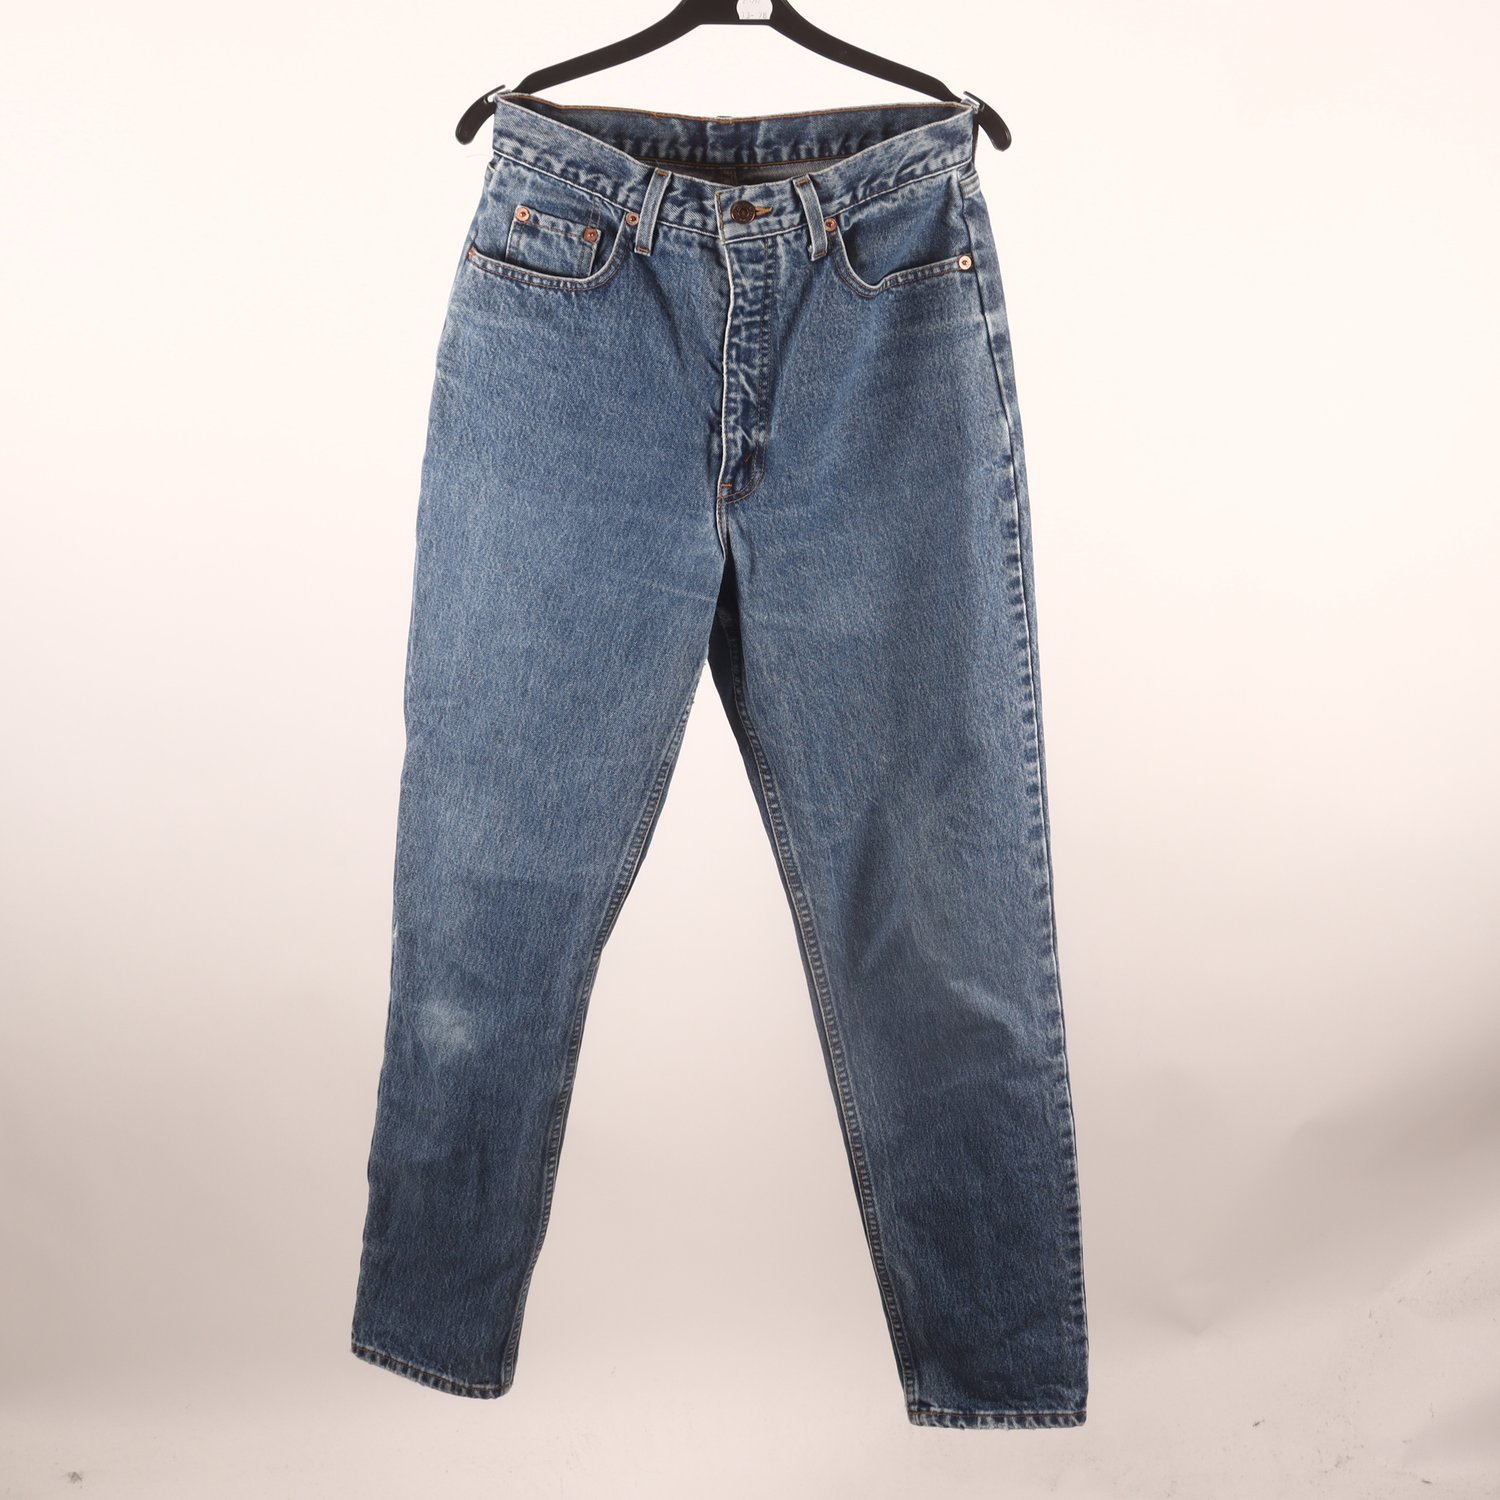 Jeans, Levi’s 881 Orange Tab, vintage, stl. 31/32